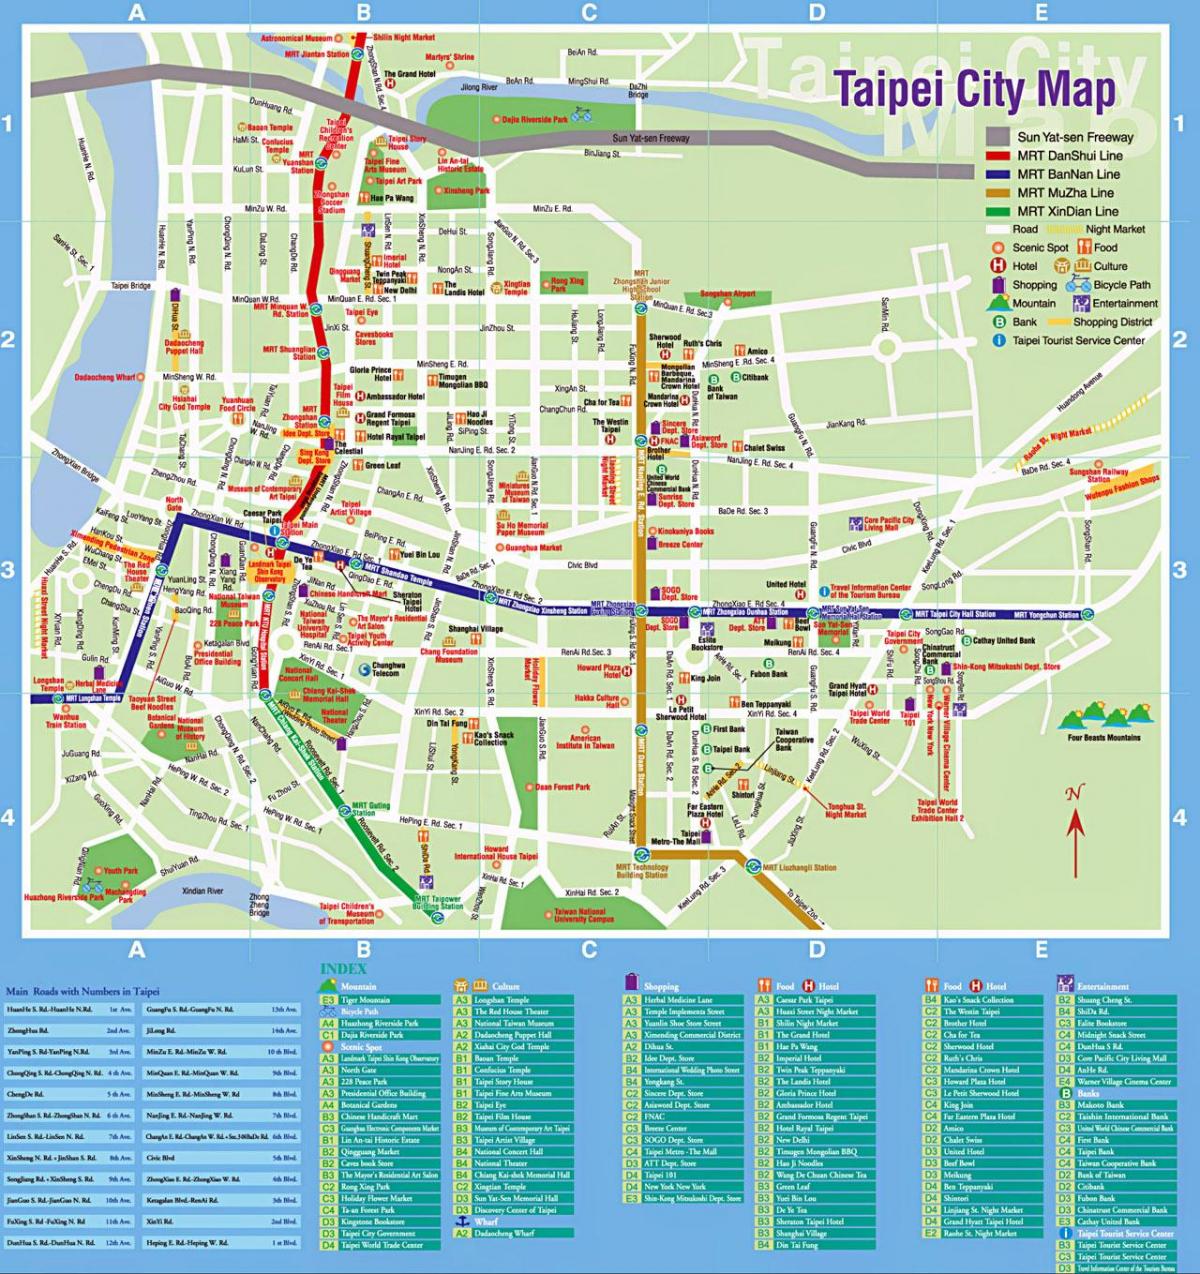 타이페이의 관광 명소 맵